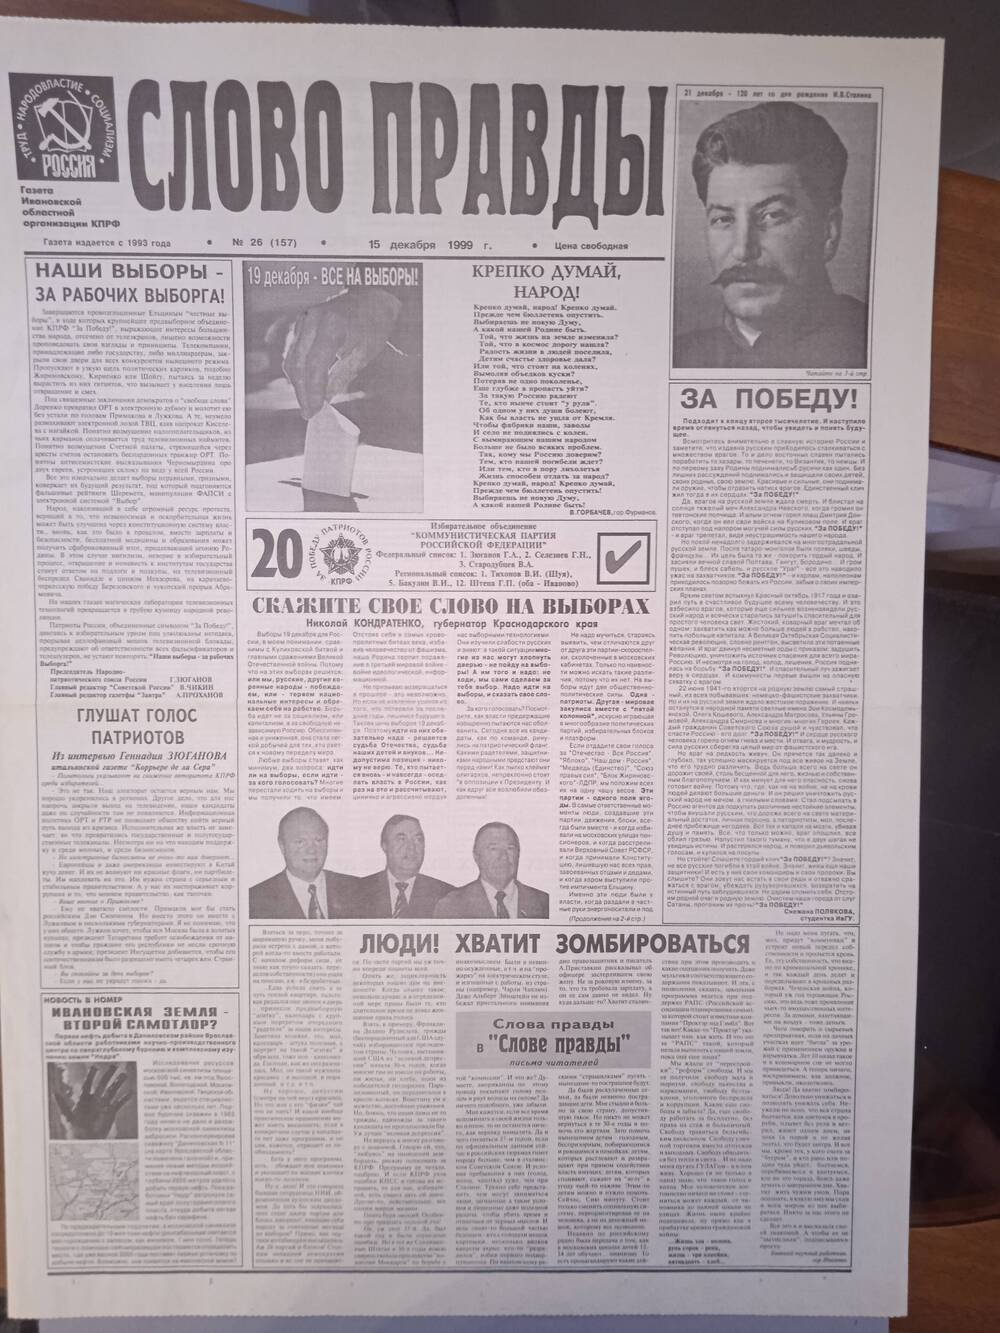 Газета «Слово Правды» № 26 от 15 декабря 1999 г. изд-е Ивановской обл. организации КПРФ.